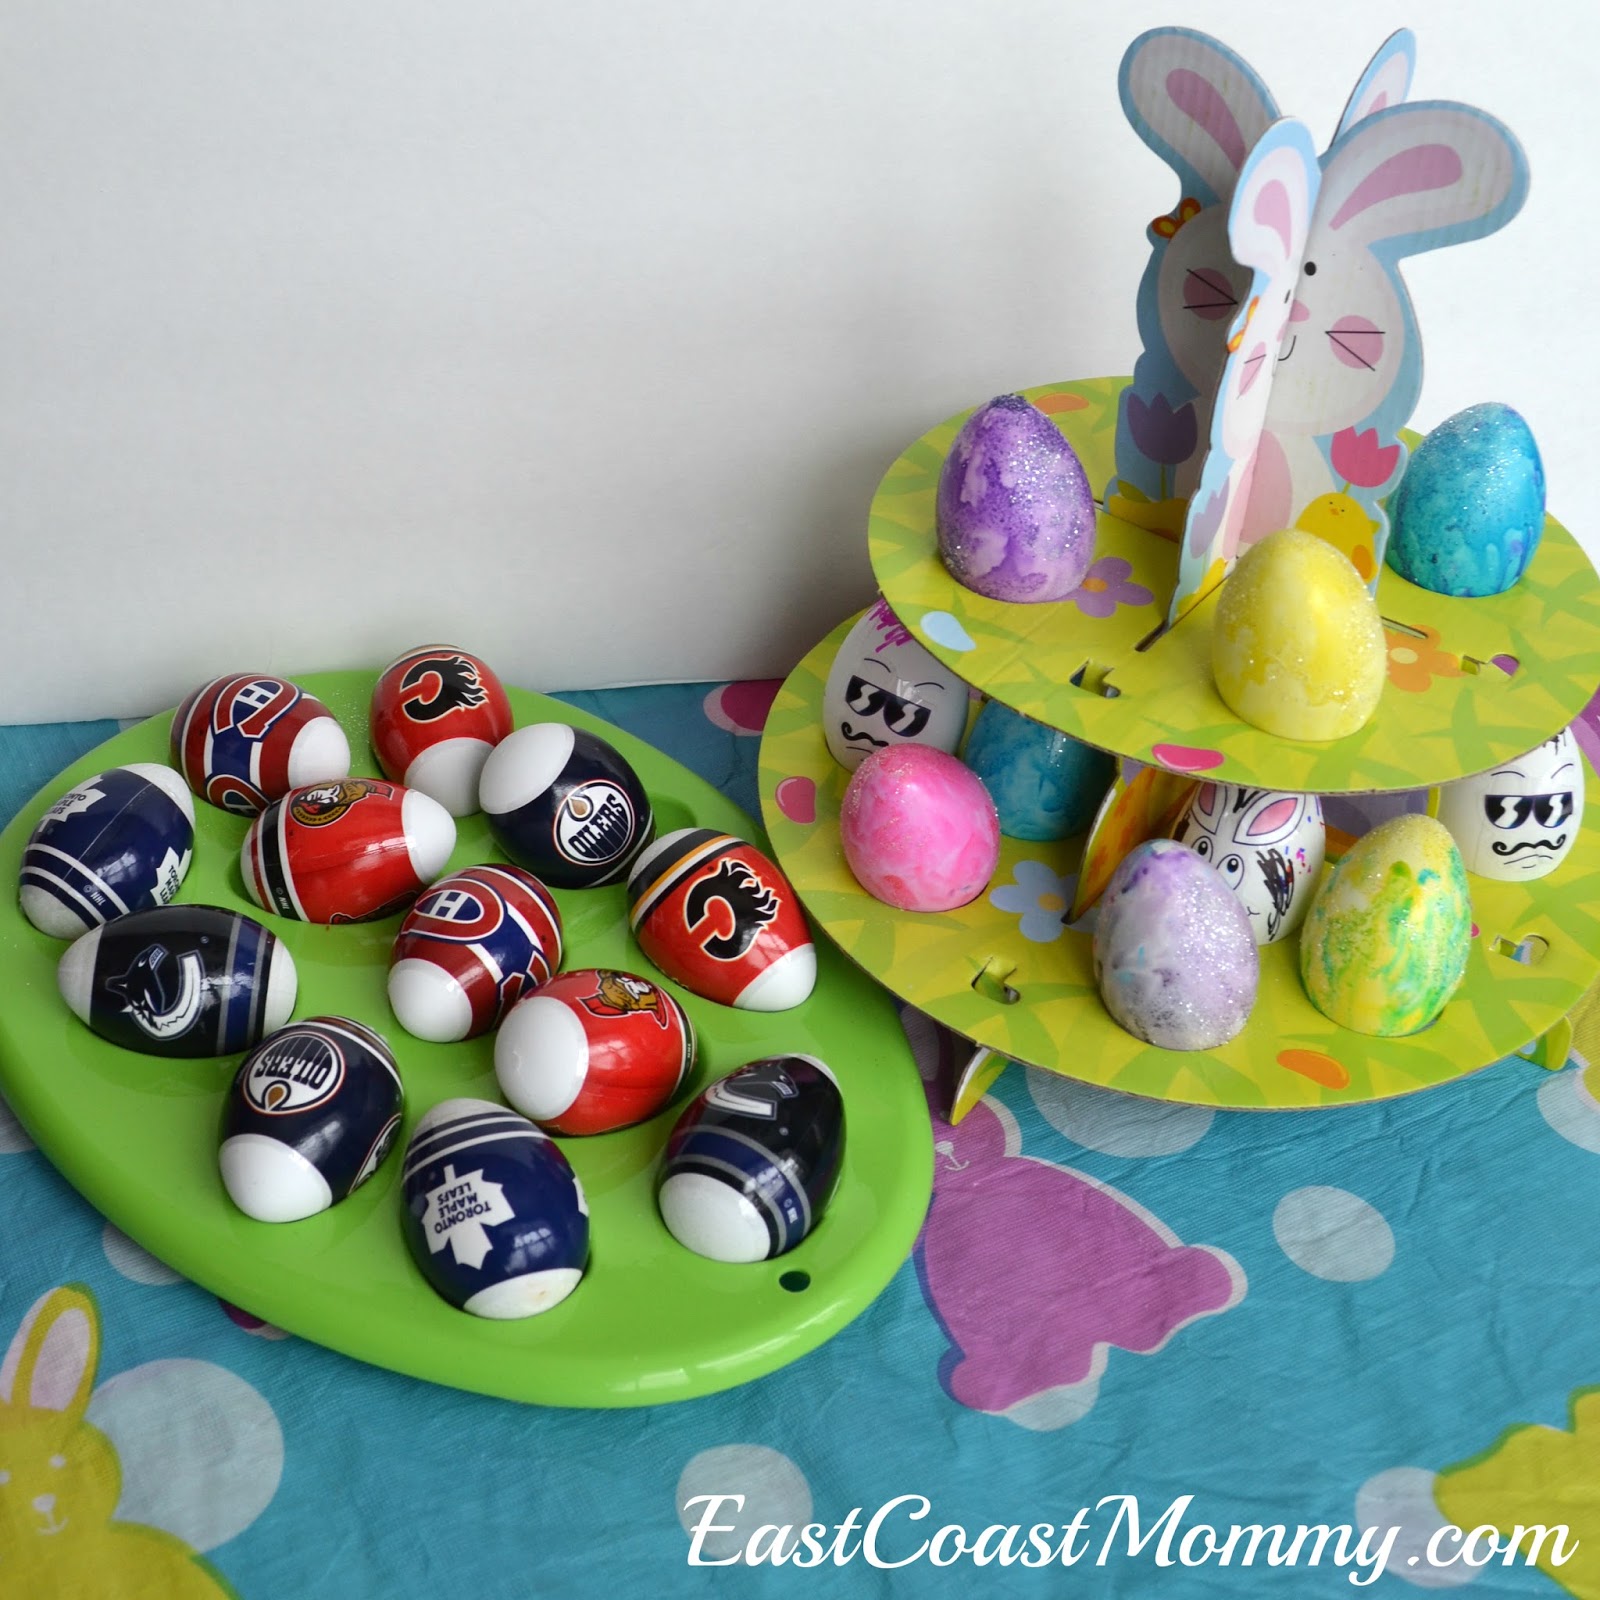 5 Amazing Easter Egg Decorating Ideas - Centsable Momma